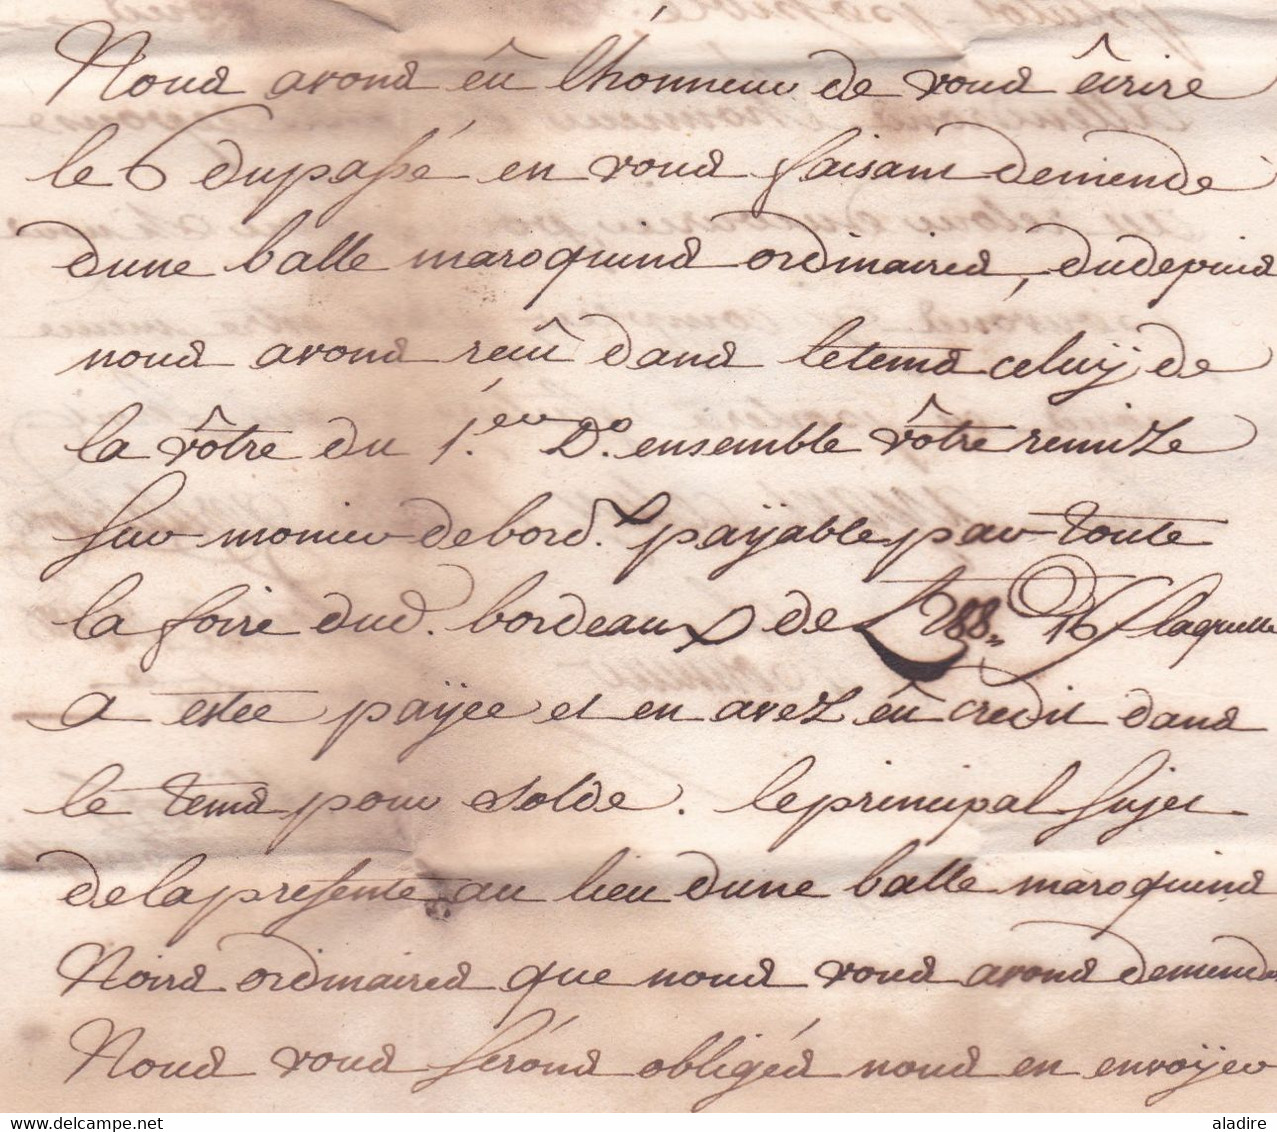 1747 - Marque postale DE MONTAUBAN sur lettre pliée avec corresp de 2 pages vers Brignolle Brignoles, Var - Maroquins